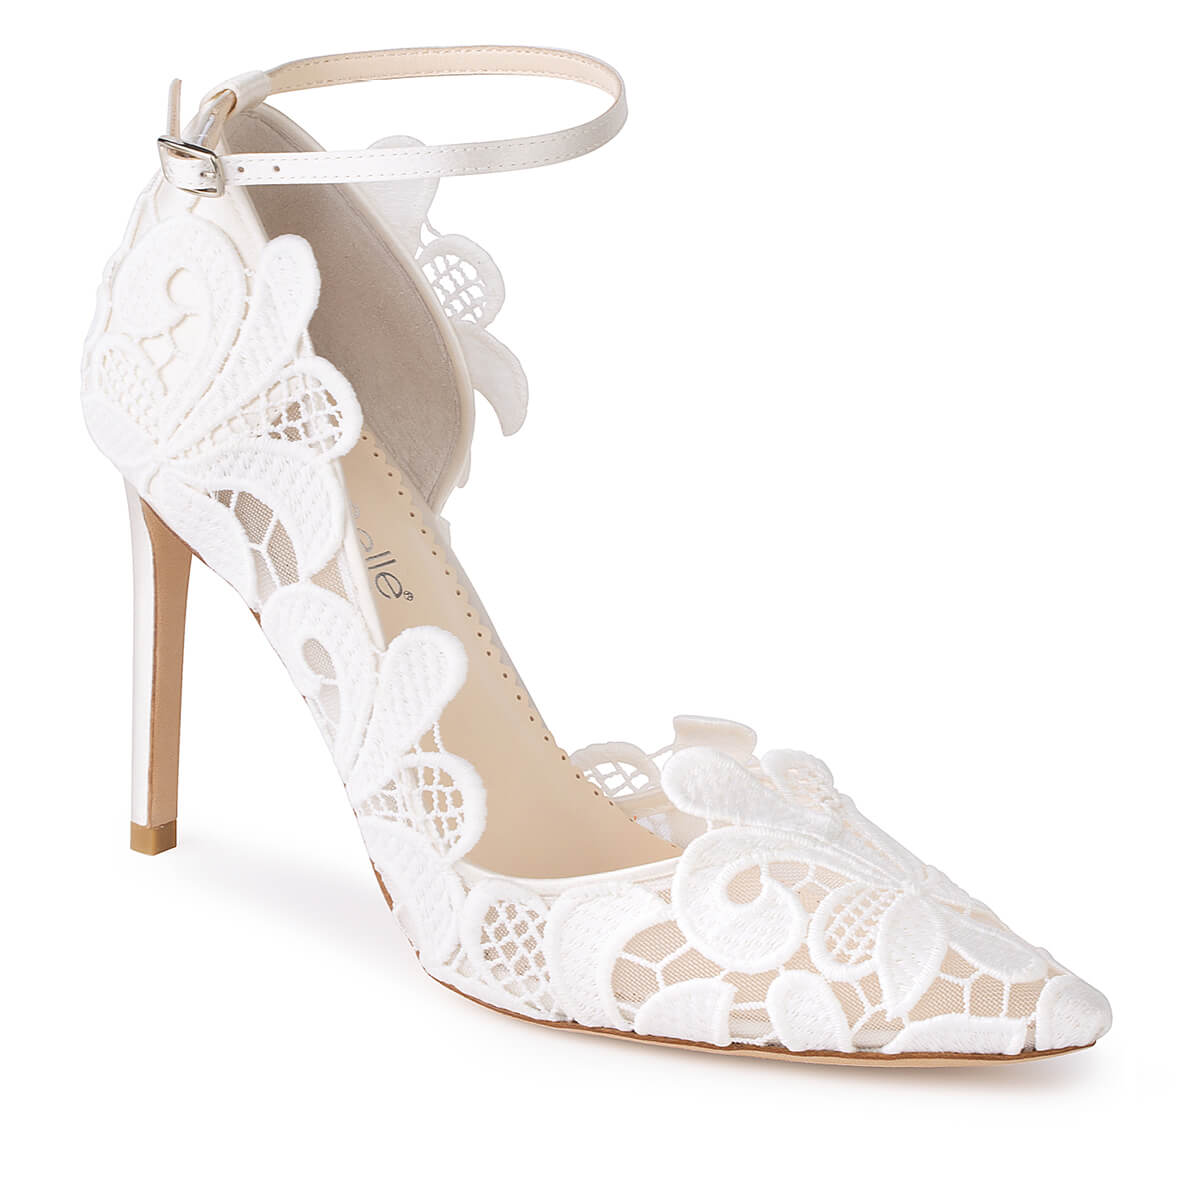 Bella Belle Shoes Odette Geometric Lace Bridal Heels Pumps